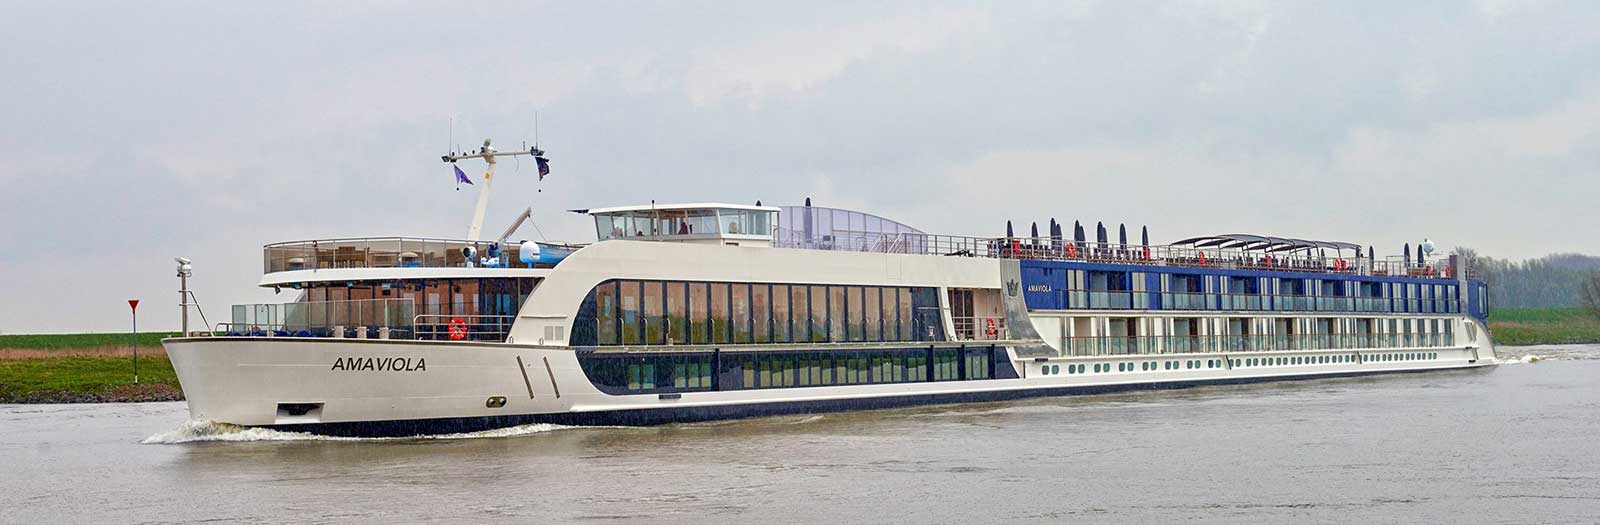 AmaViola River Cruise Ship